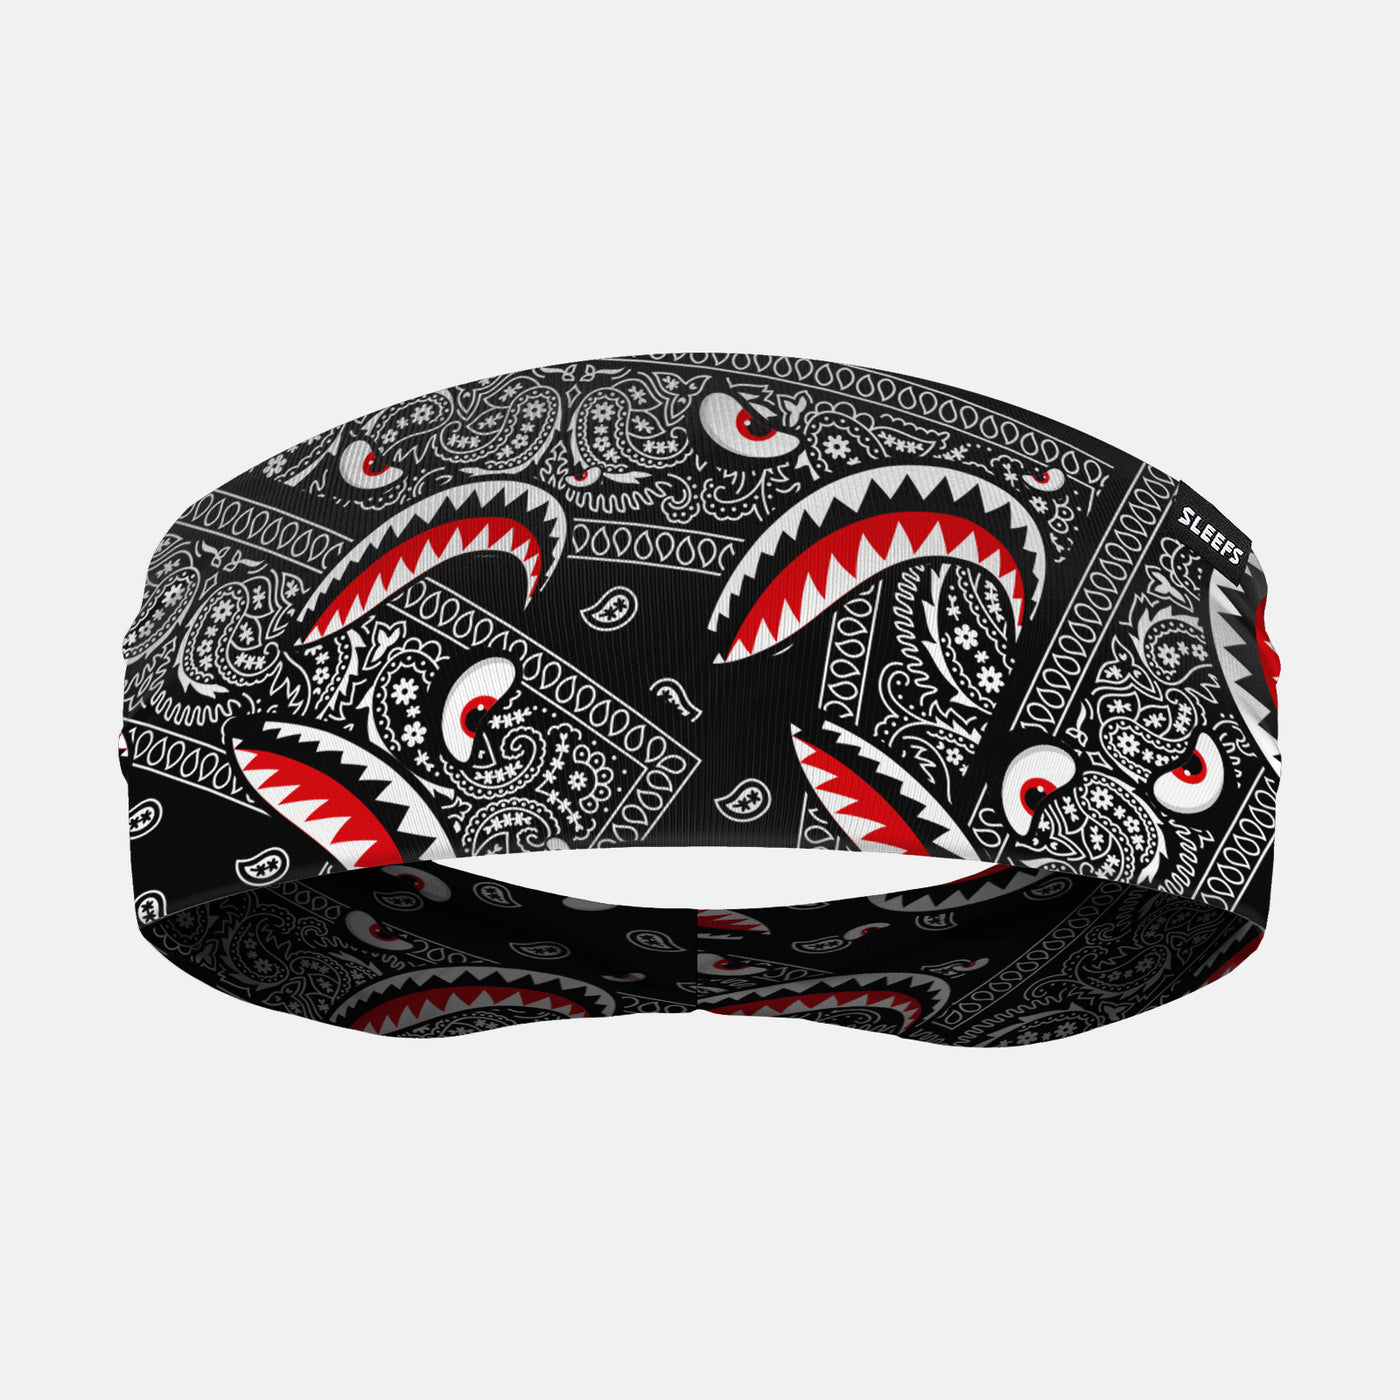 War Shark Classic Bandana Headband